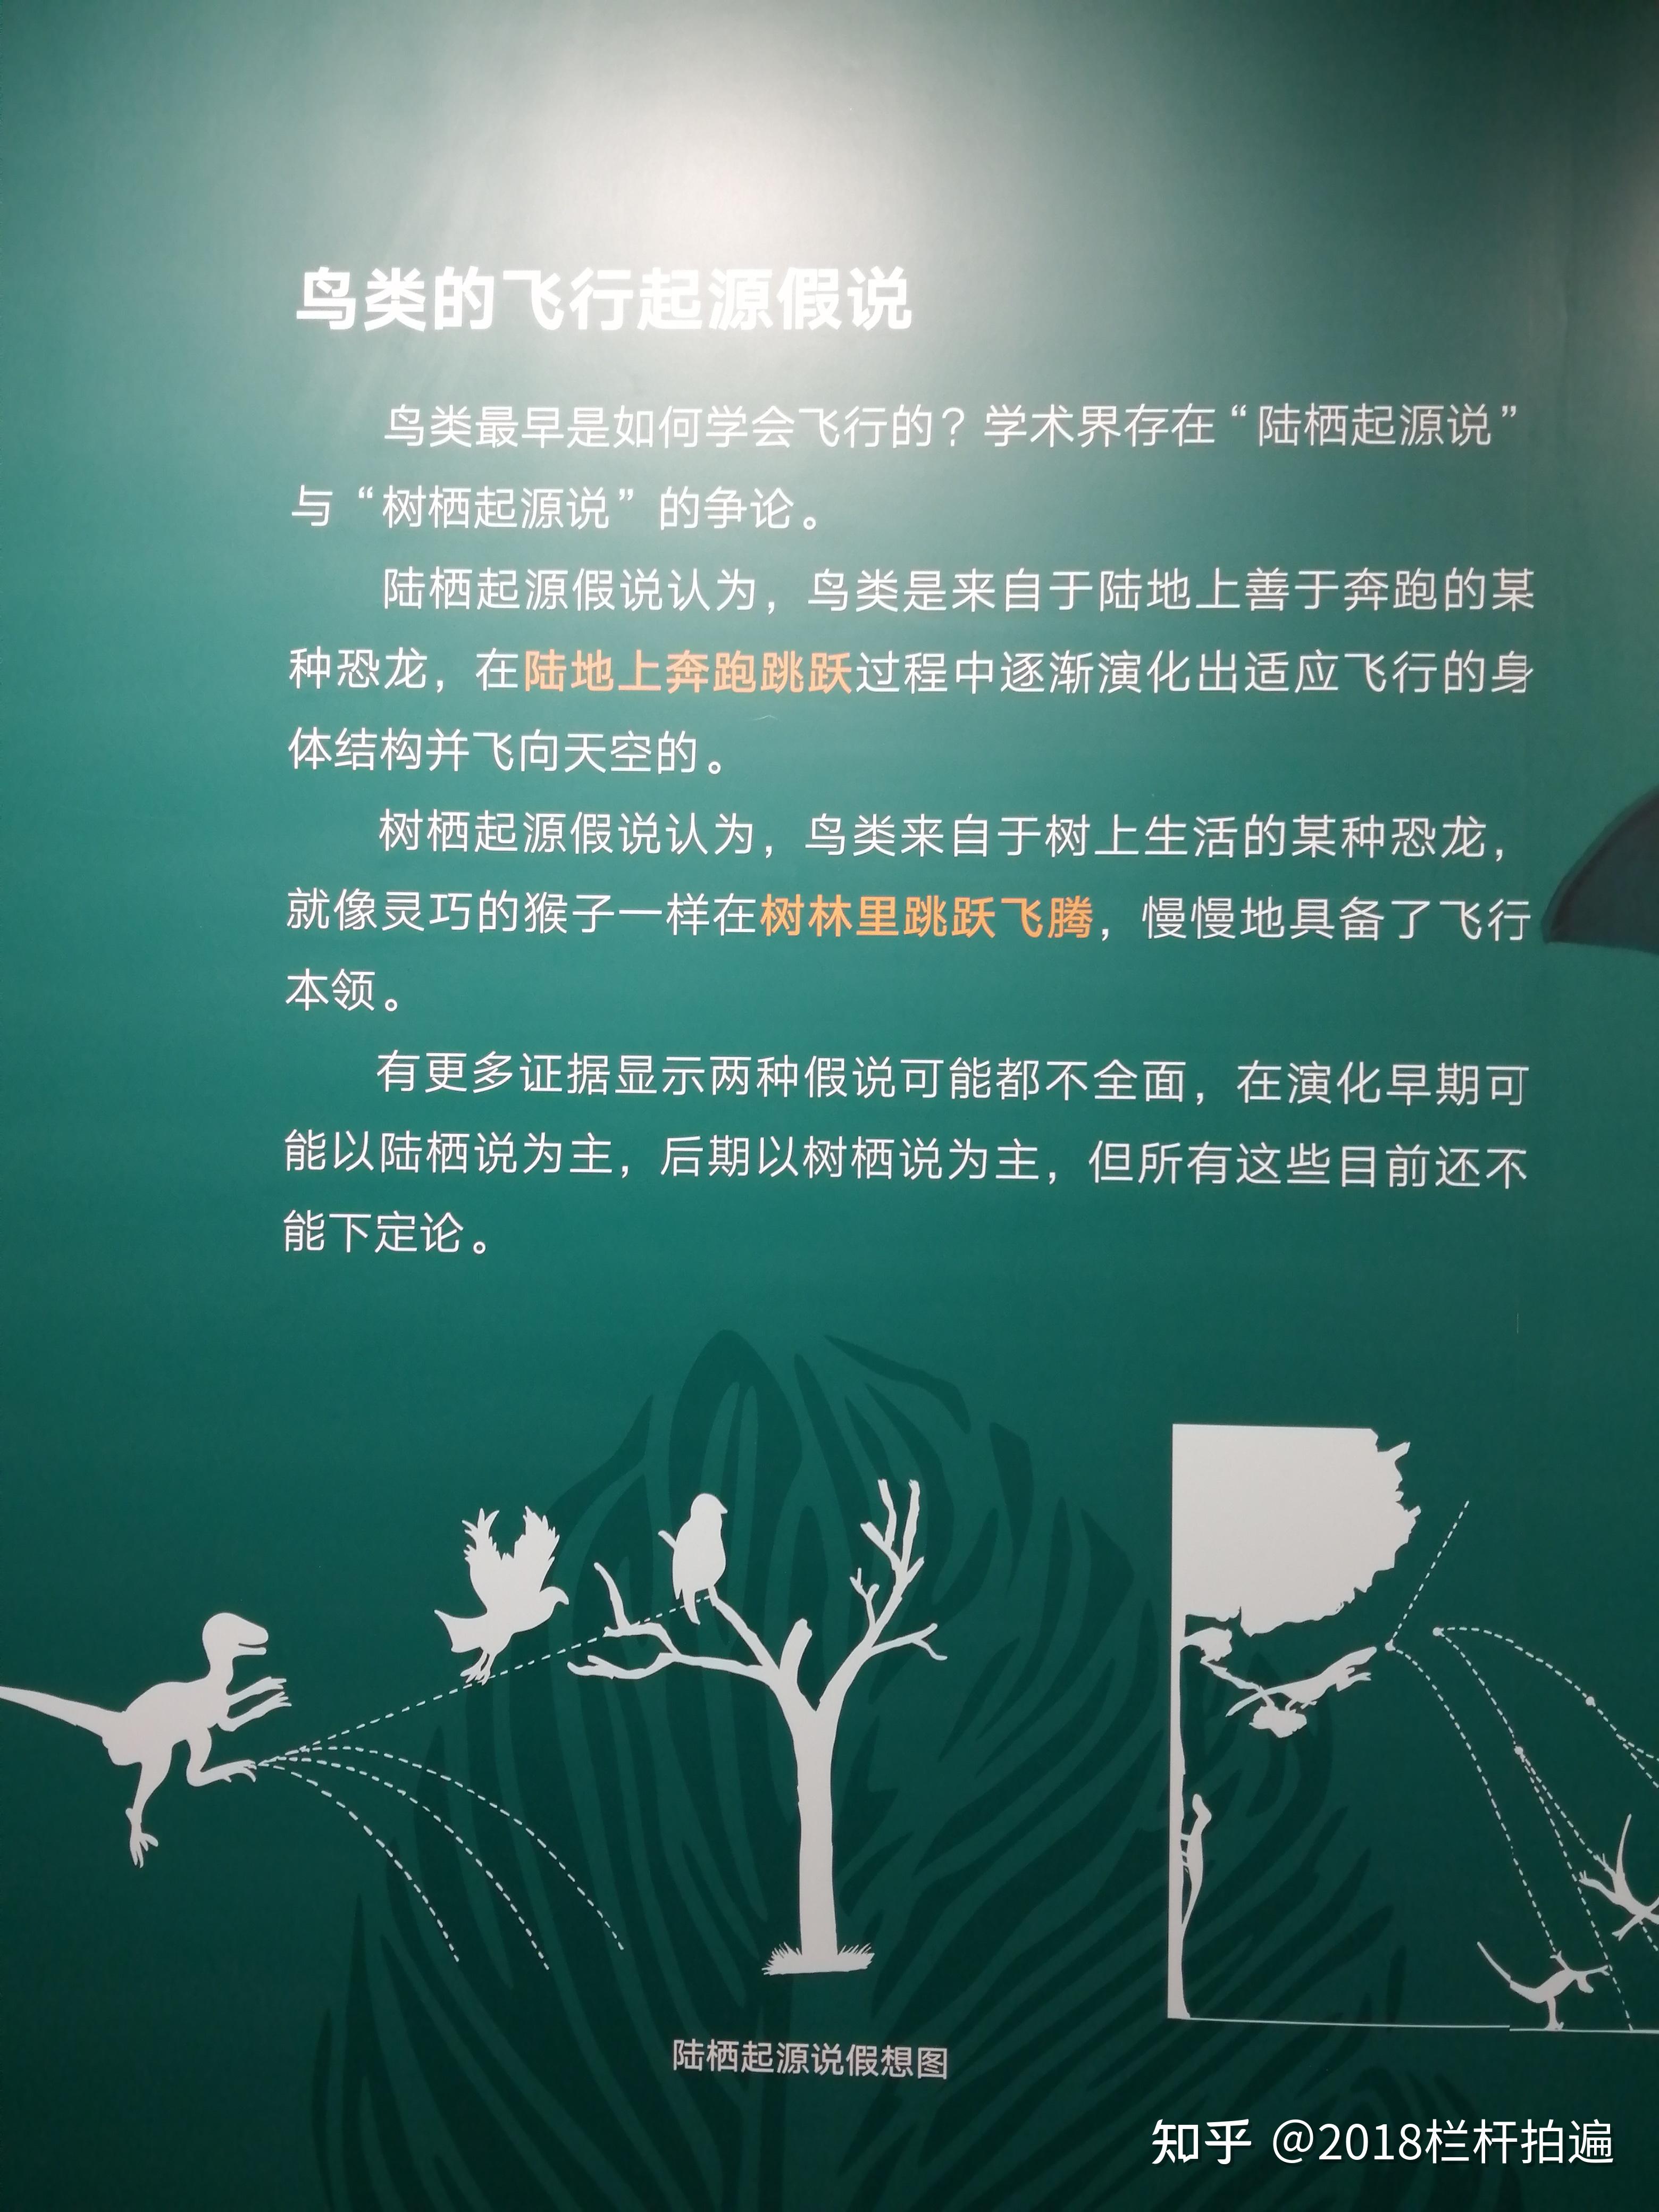 北京地博恐龙与鸟专题展中